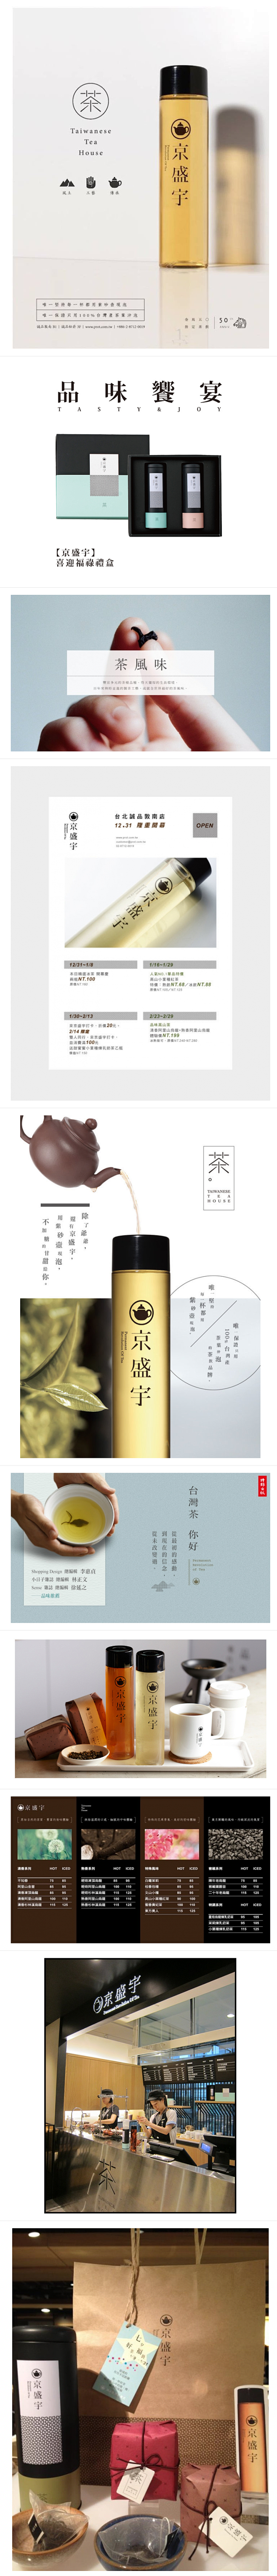 台湾茶品牌京盛宇品牌+包装设计 更多.....